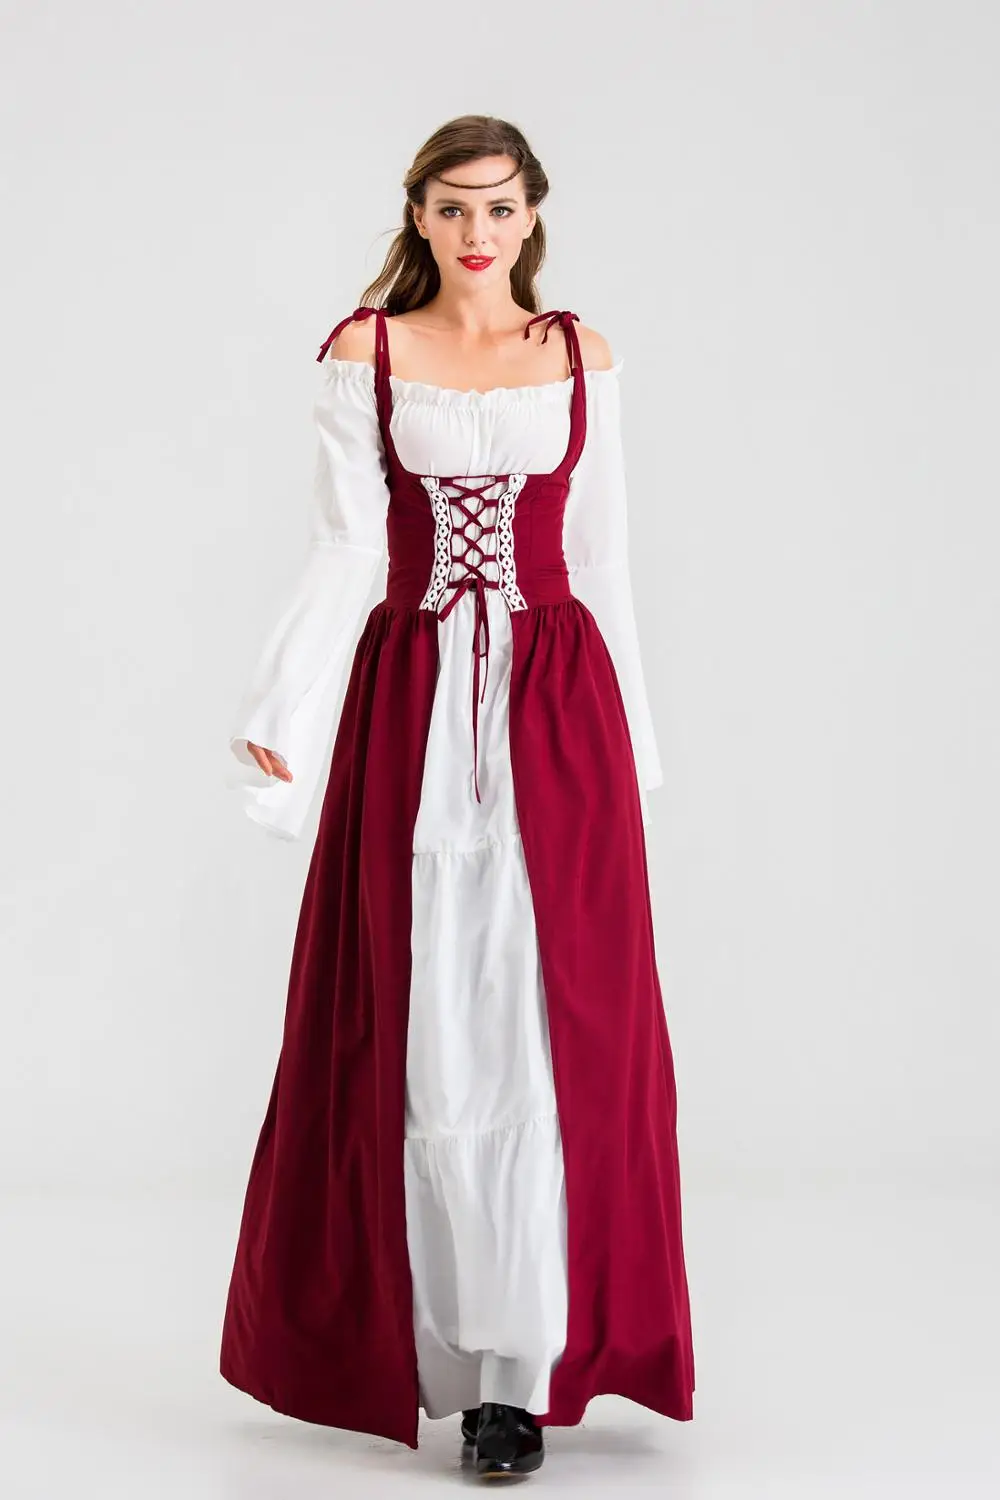 Victoria zeita greaca retro evul mediu rochie de halloween carnaval medieval printesa de cosplay, costume pentru femei rochii de dantelă Costume pentru femei < www.videoprint.ro